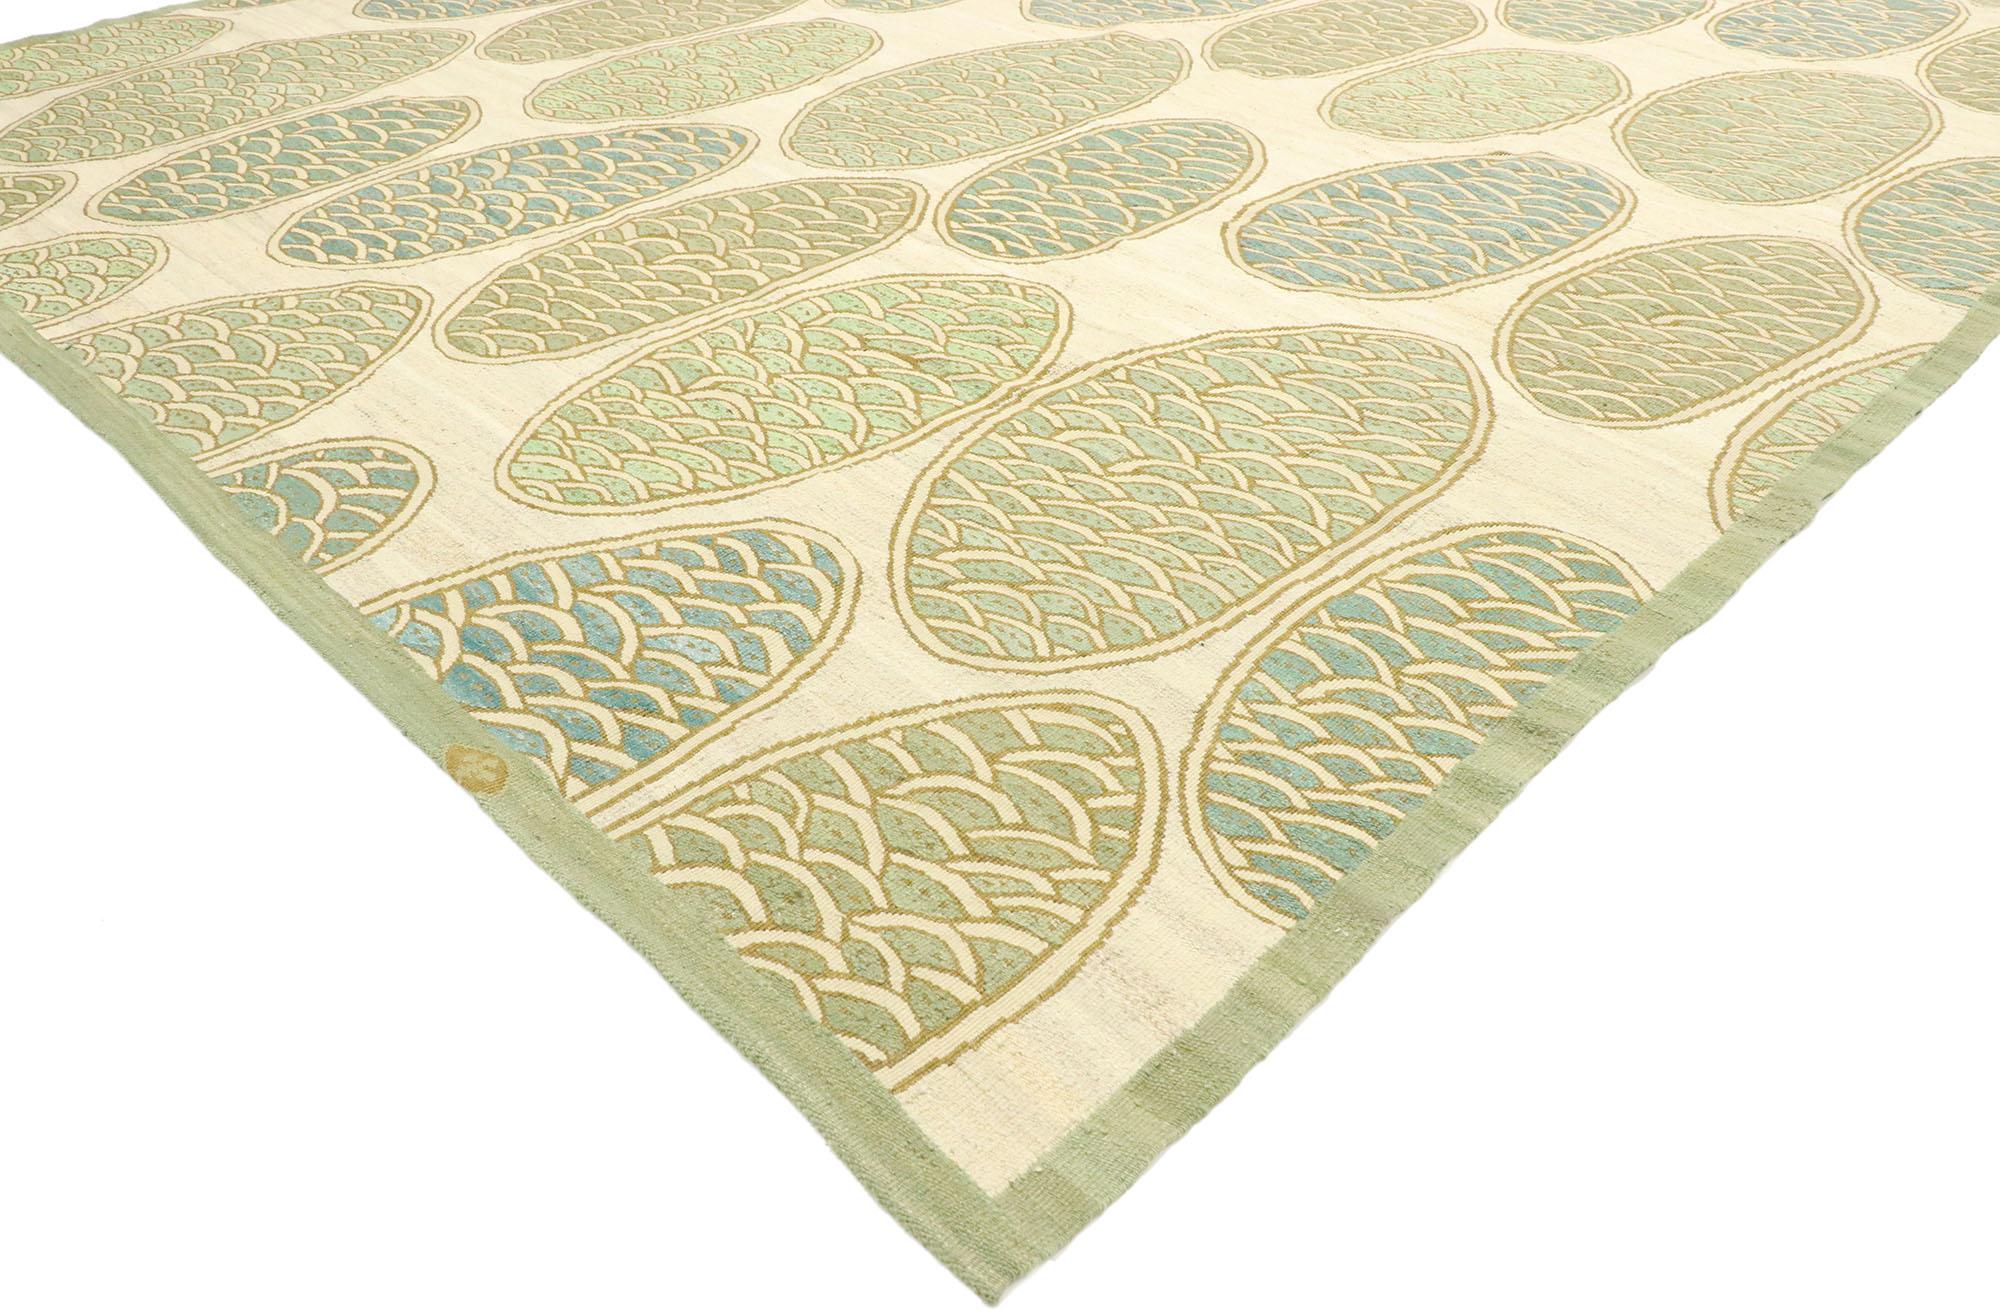 77528 Antiker französischer Aubusson-Modern-Teppich mit geschwungenem Orb-Muster und biophilem Design. Dieser handgewebte antike französische Aubusson-Teppich aus Wolle, der von Robert Delaunay und Sonia Delaunay inspiriert wurde und japanische